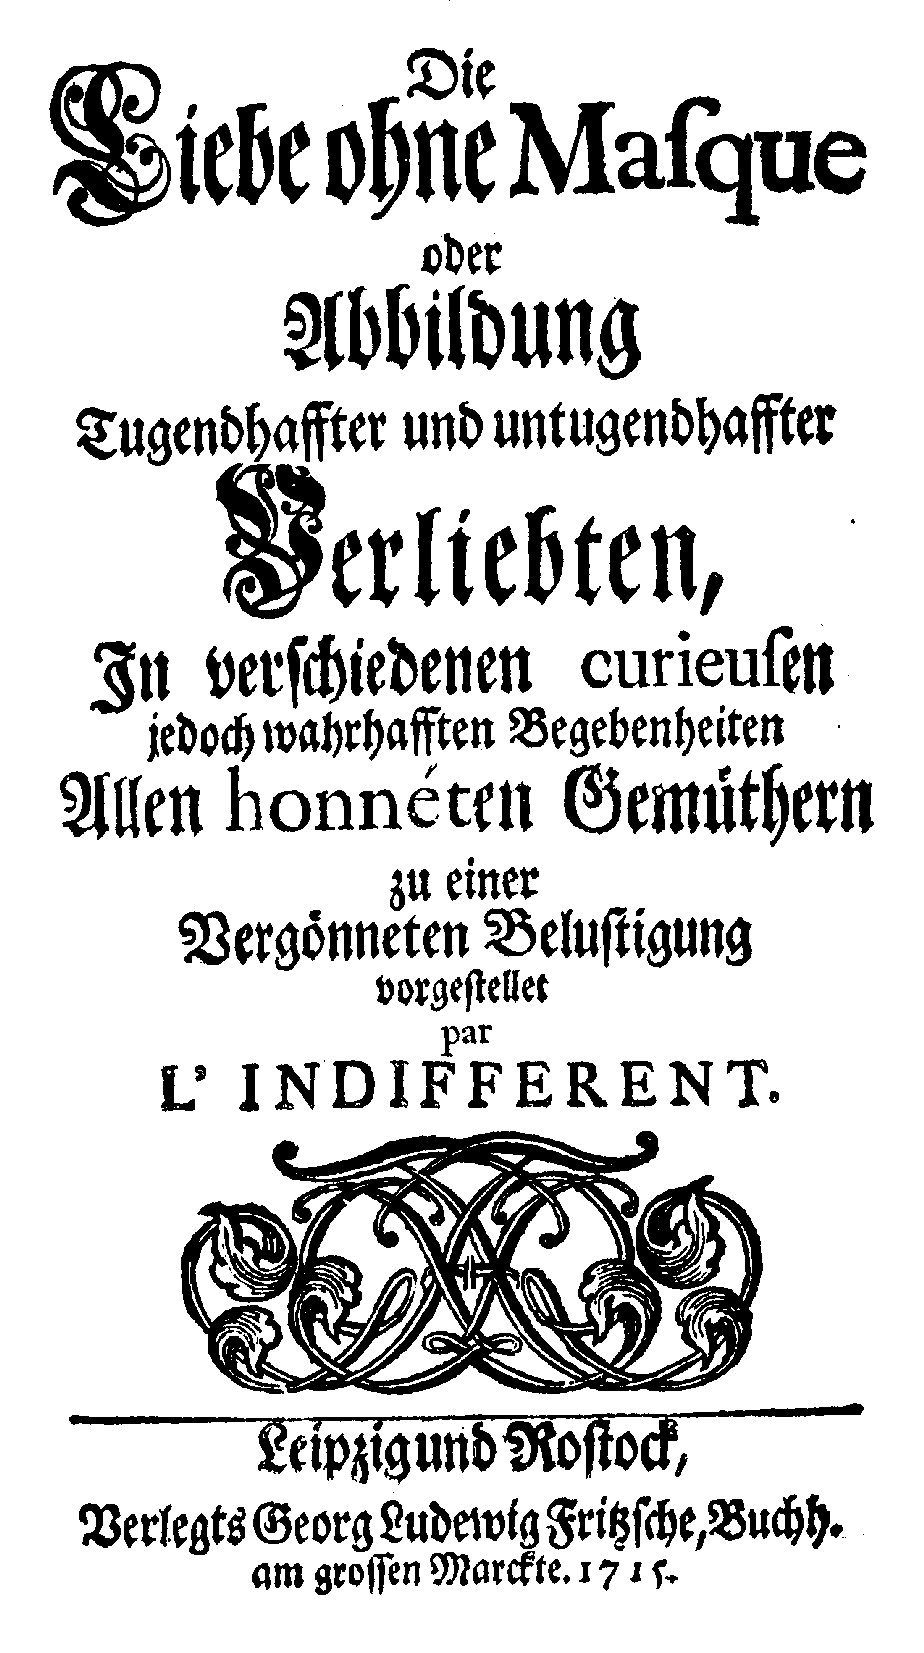 L'Indifferent, Liebe ohne Masque (Leipzig/ Rostock: G. L. Fritzsche Buchhandlung, 1715).